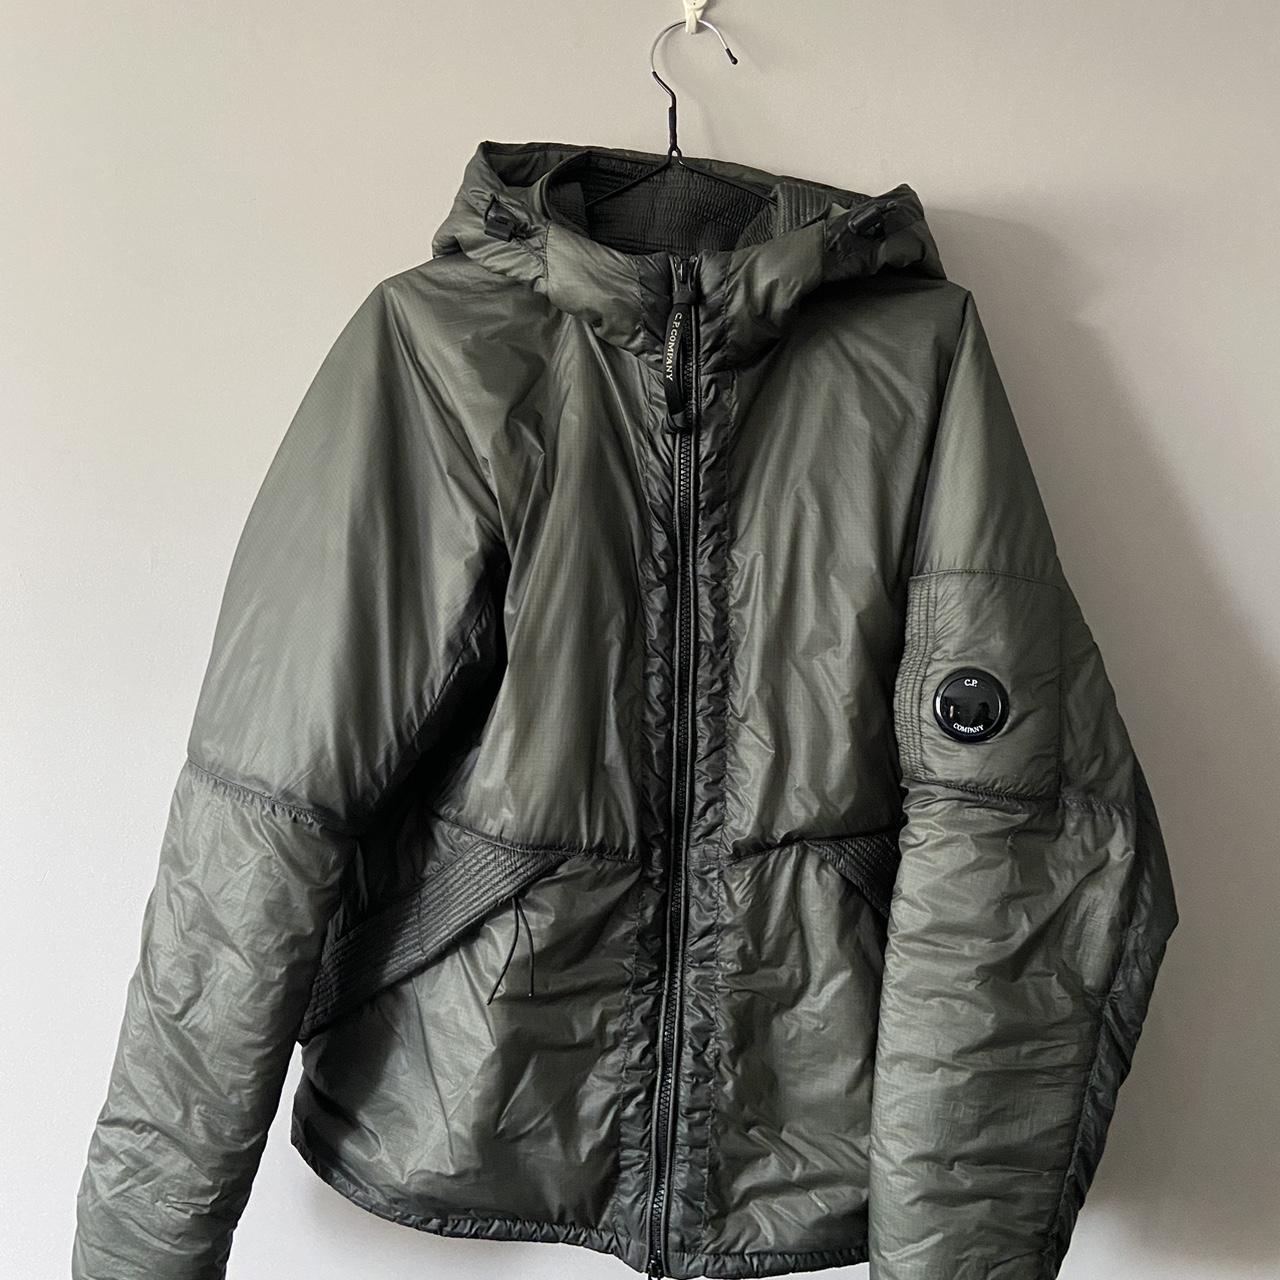 Cp company outline primaloft jacket - Depop